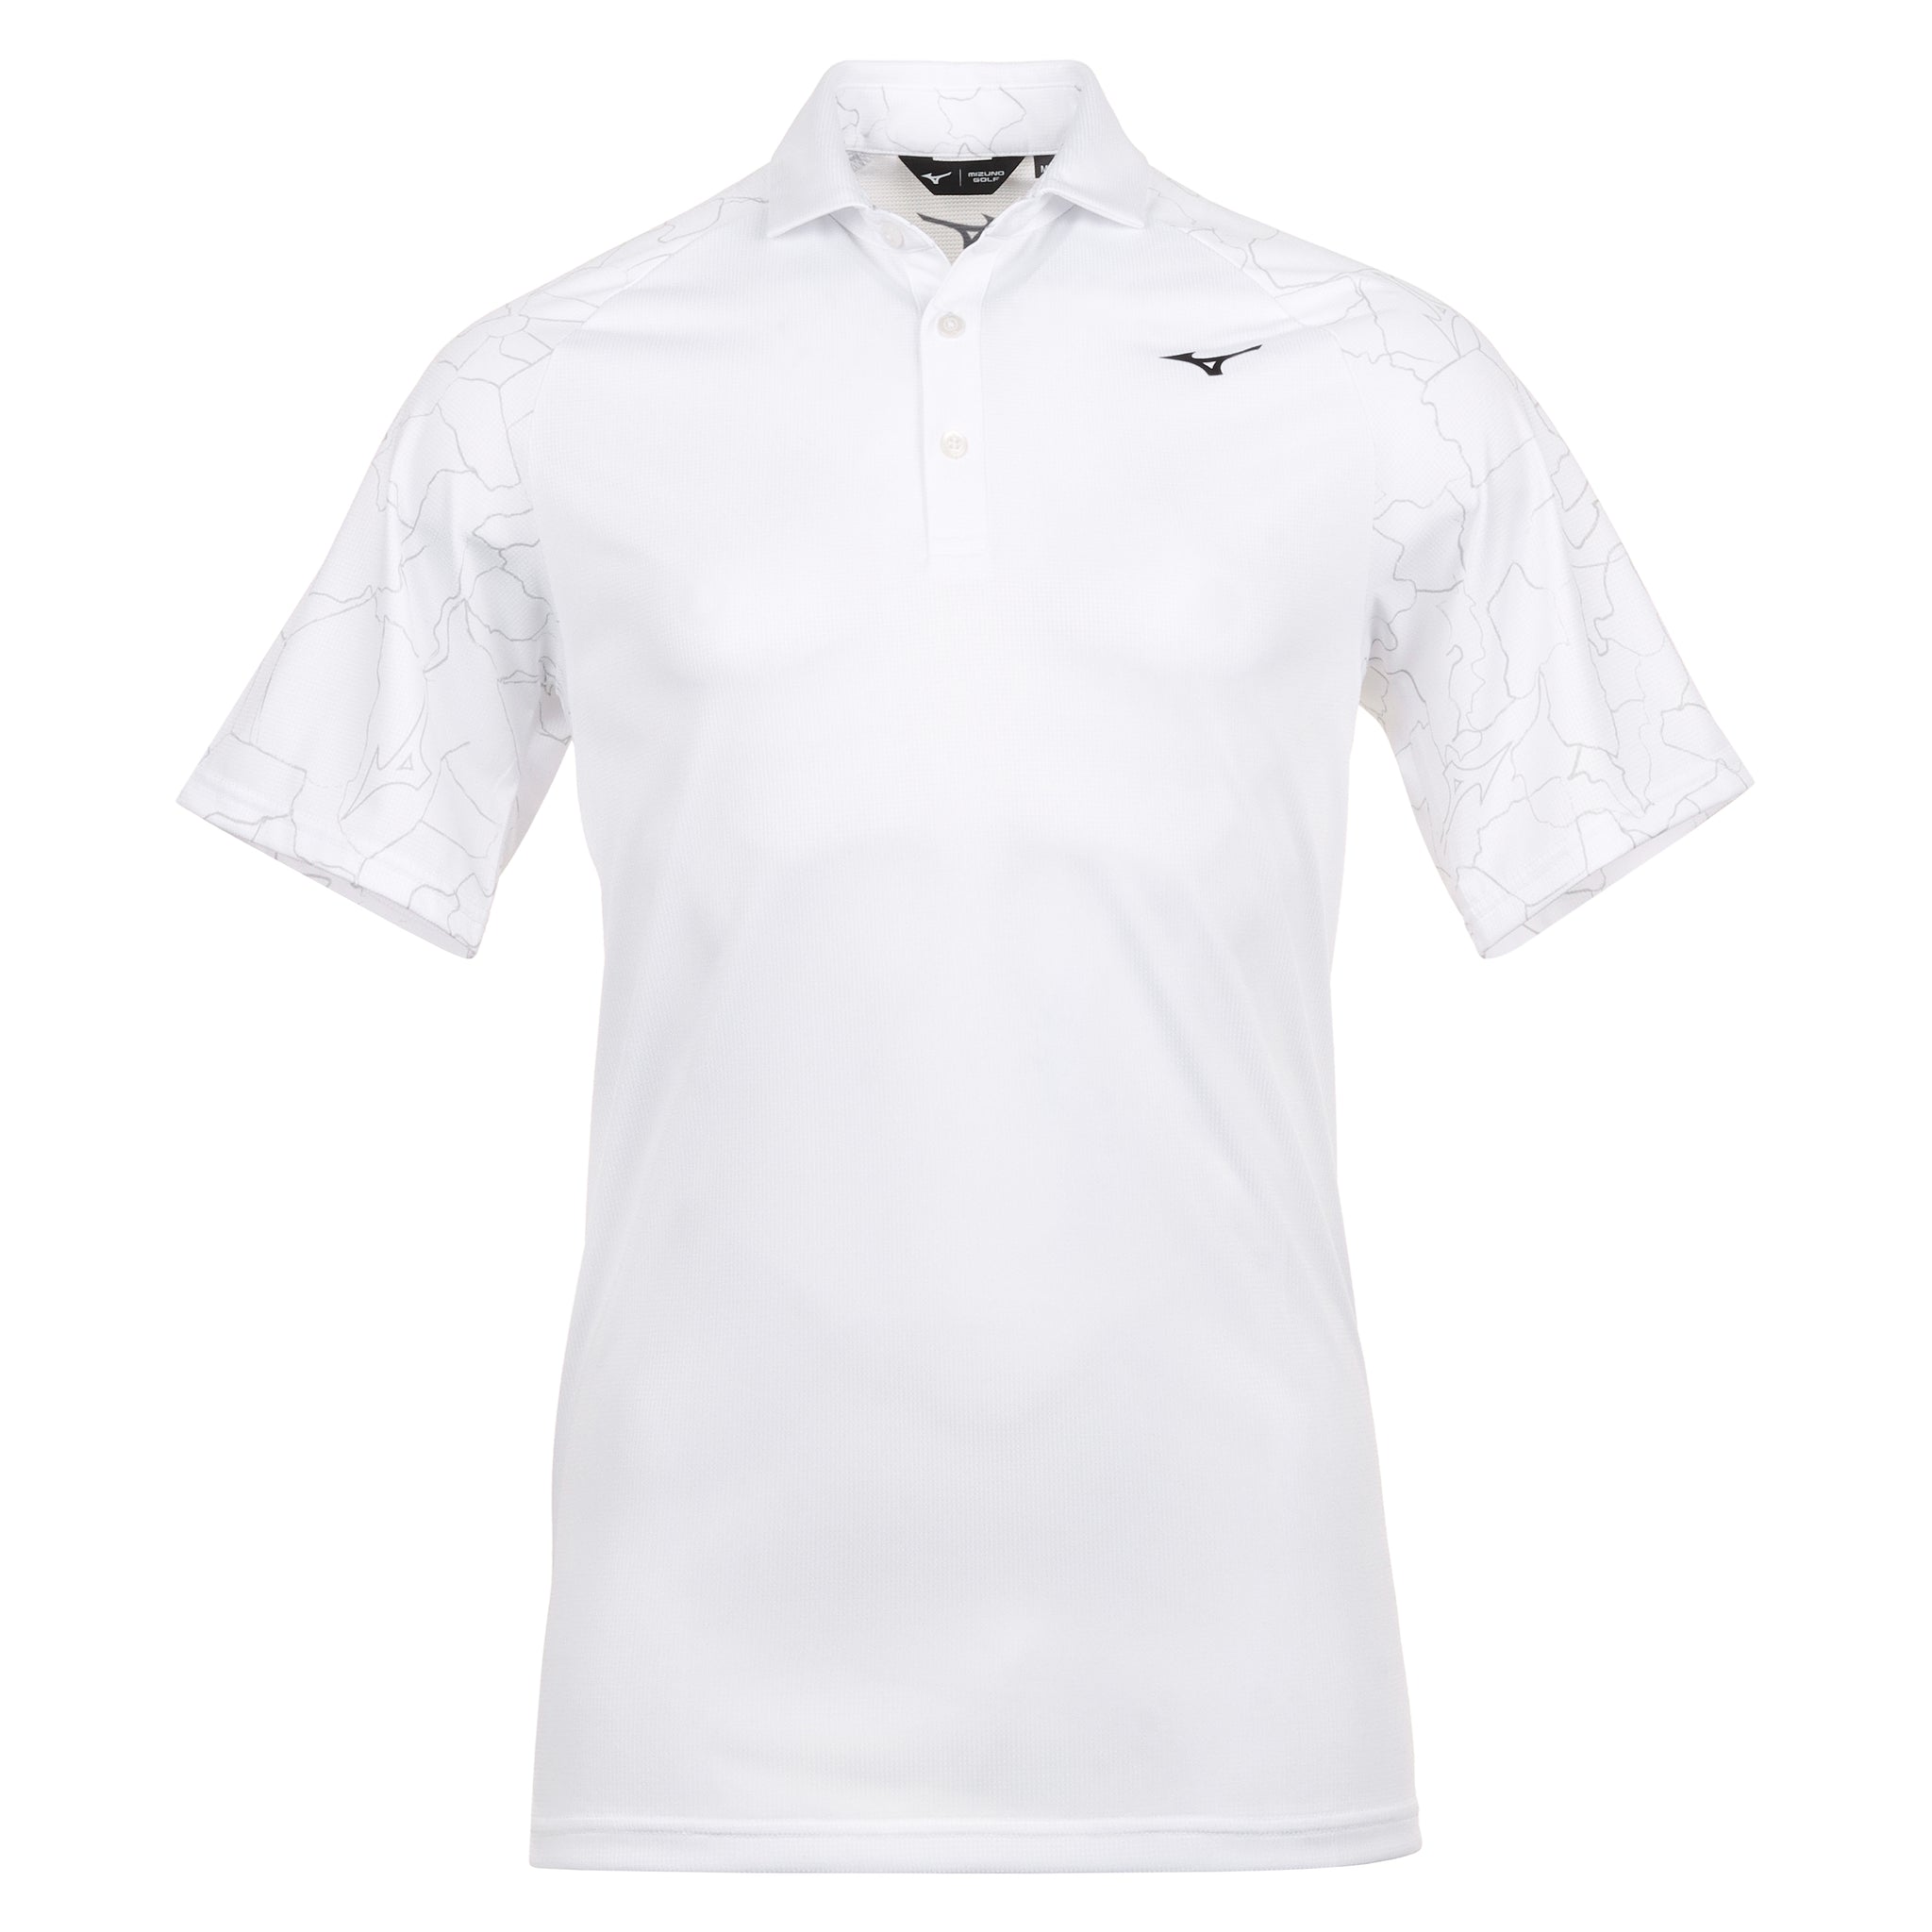 Mizuno Golf Fragma Drop Polo Shirt